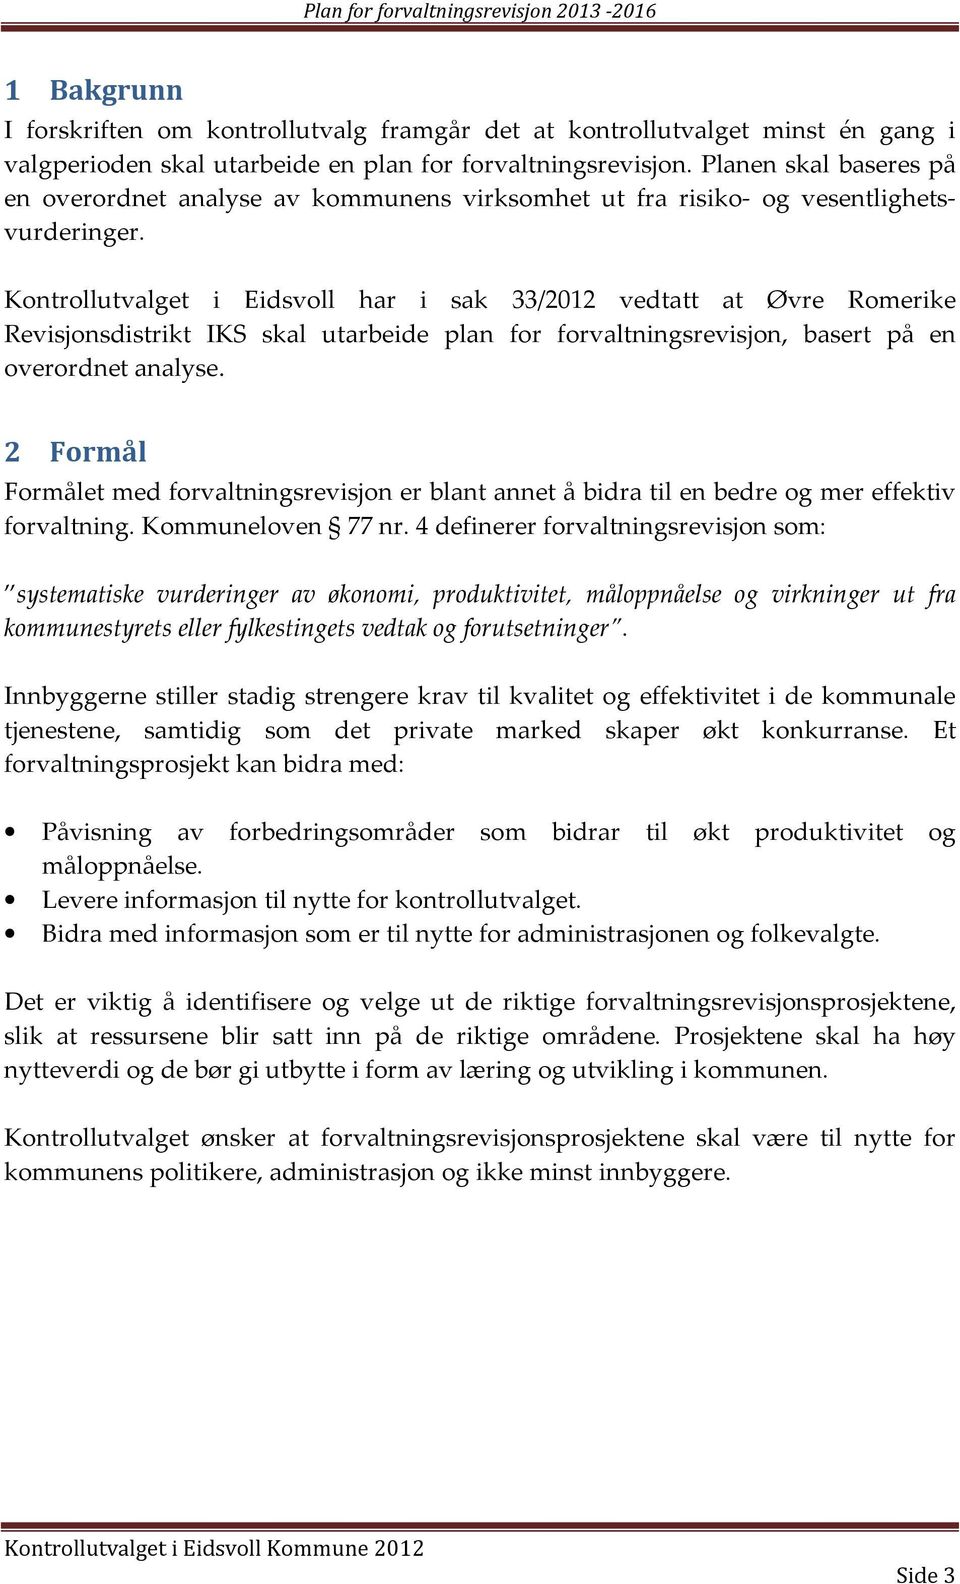 Kontrollutvalget i Eidsvoll har i sak 33/2012 vedtatt at Øvre Romerike Revisjonsdistrikt IKS skal utarbeide plan for forvaltningsrevisjon, basert på en overordnet analyse.